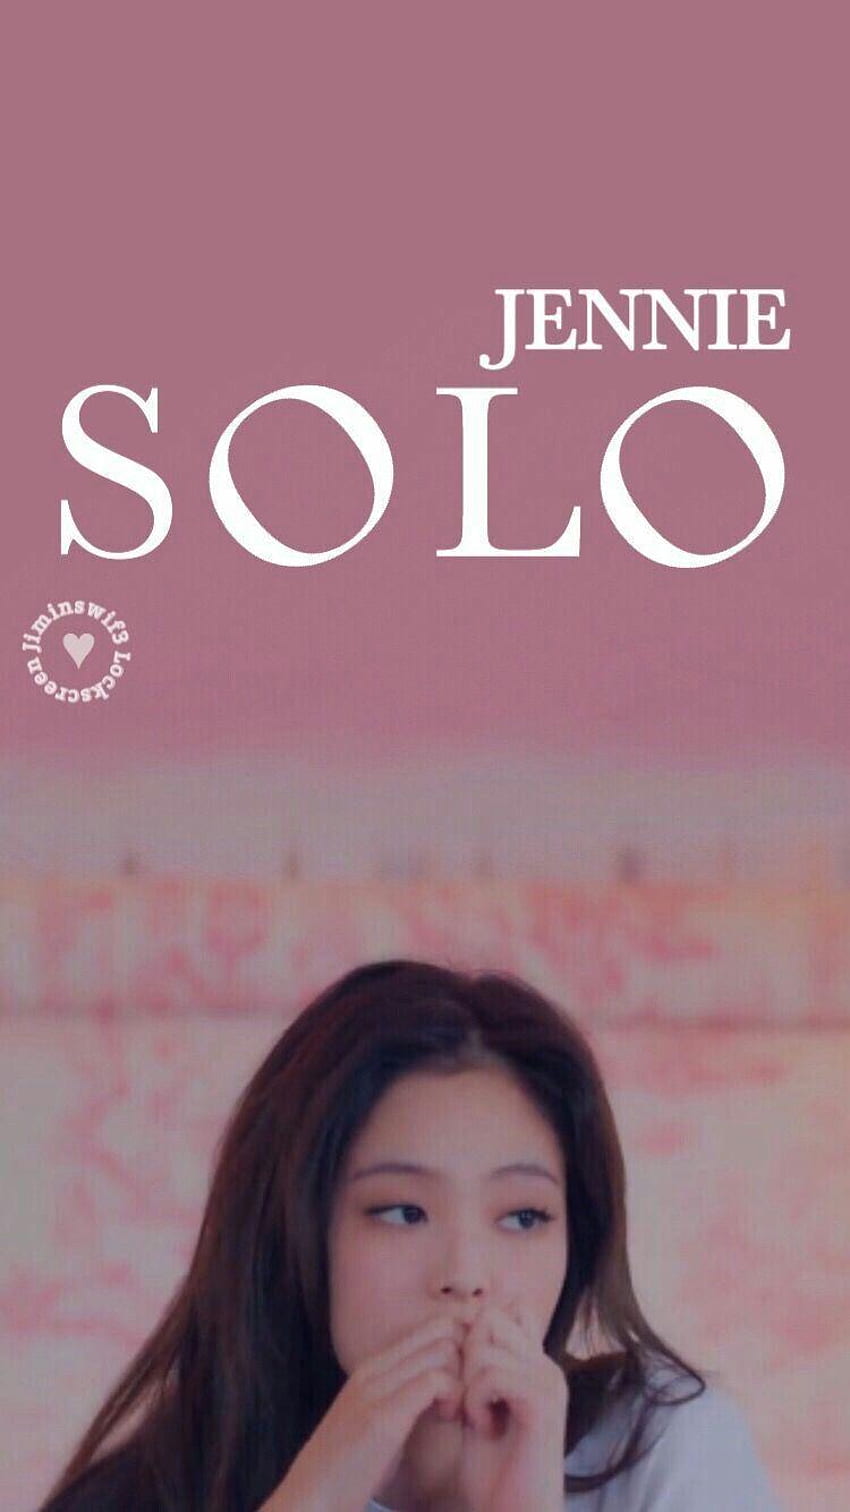 Jennie Solo HD phone wallpaper | Pxfuel